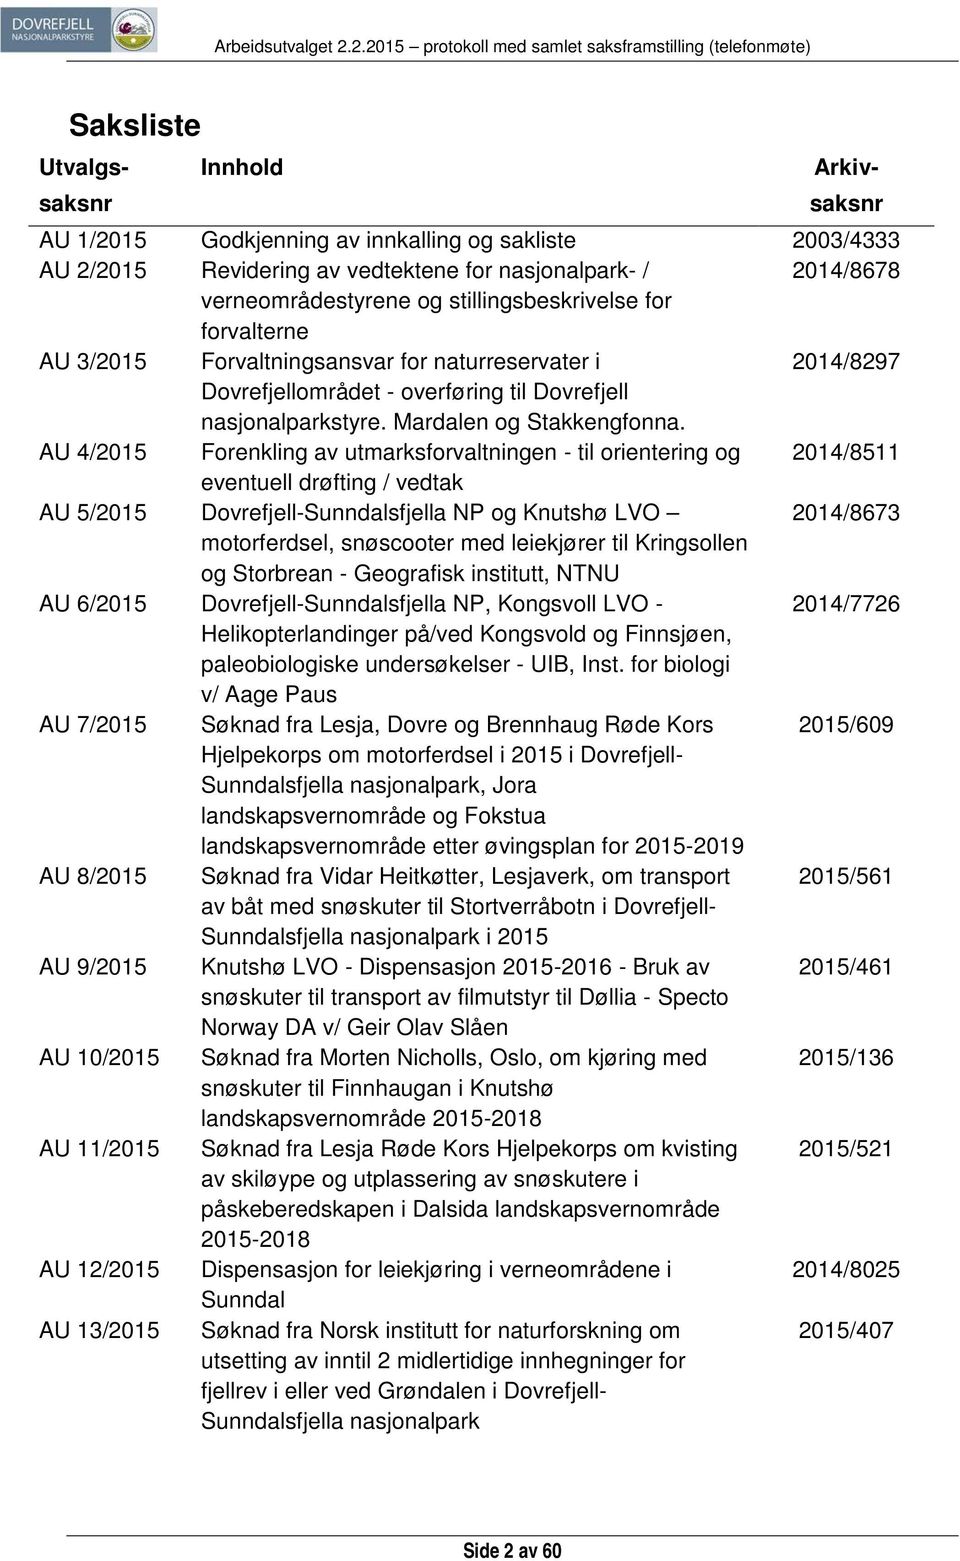 AU 4/2015 Forenkling av utmarksforvaltningen - til orientering og 2014/8511 eventuell drøfting / vedtak AU 5/2015 Dovrefjell-Sunndalsfjella NP og Knutshø LVO 2014/8673 motorferdsel, snøscooter med